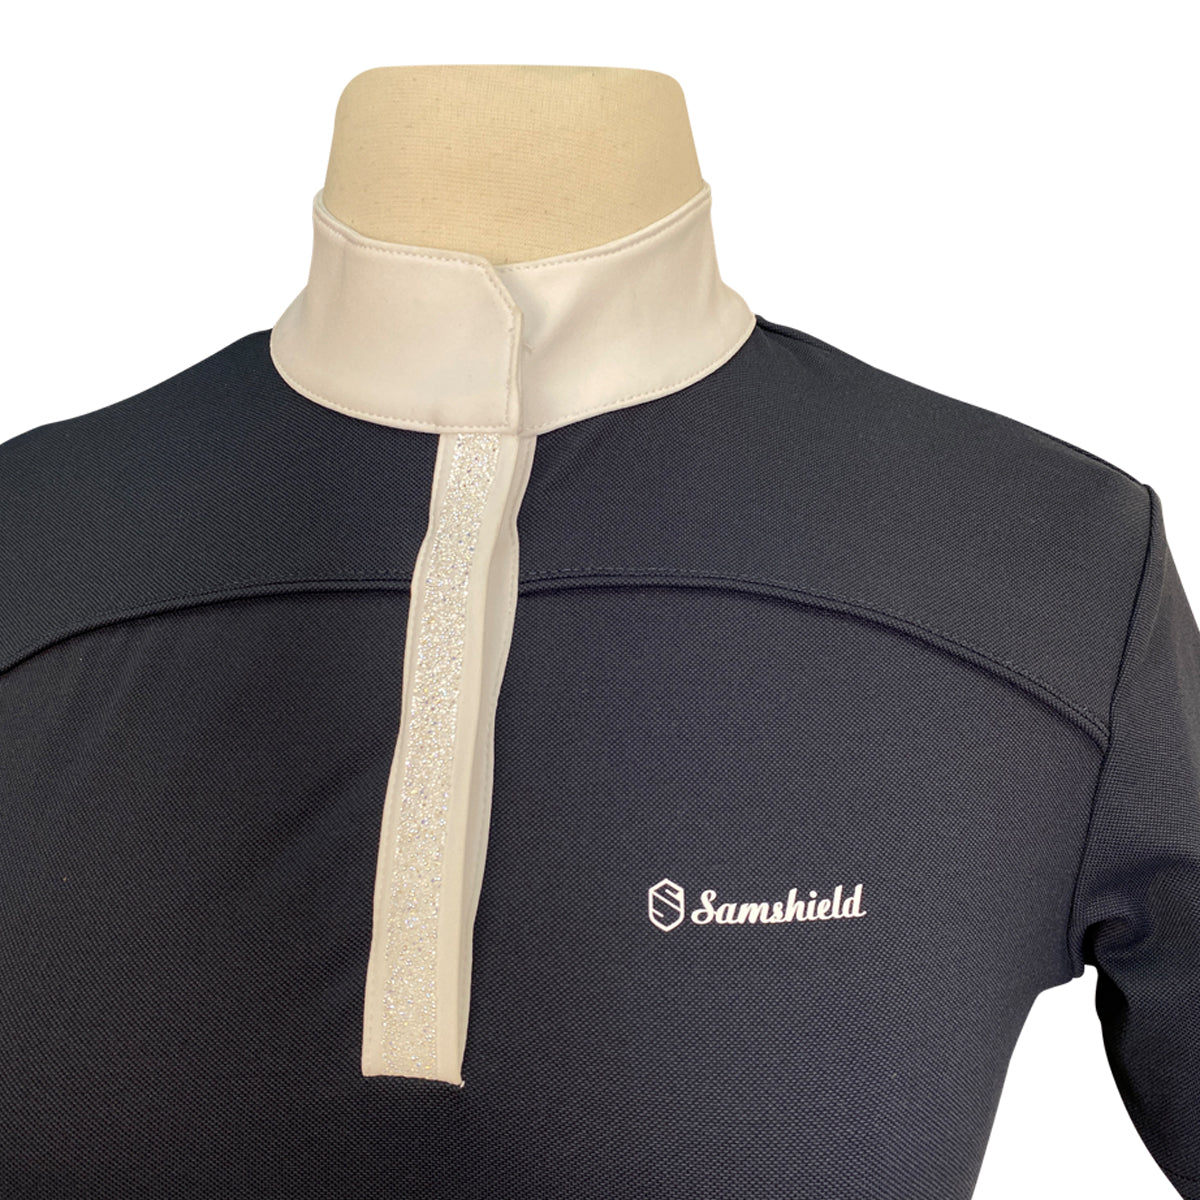 Samshield 'Jeanne' Shirt in Black/White Glitz